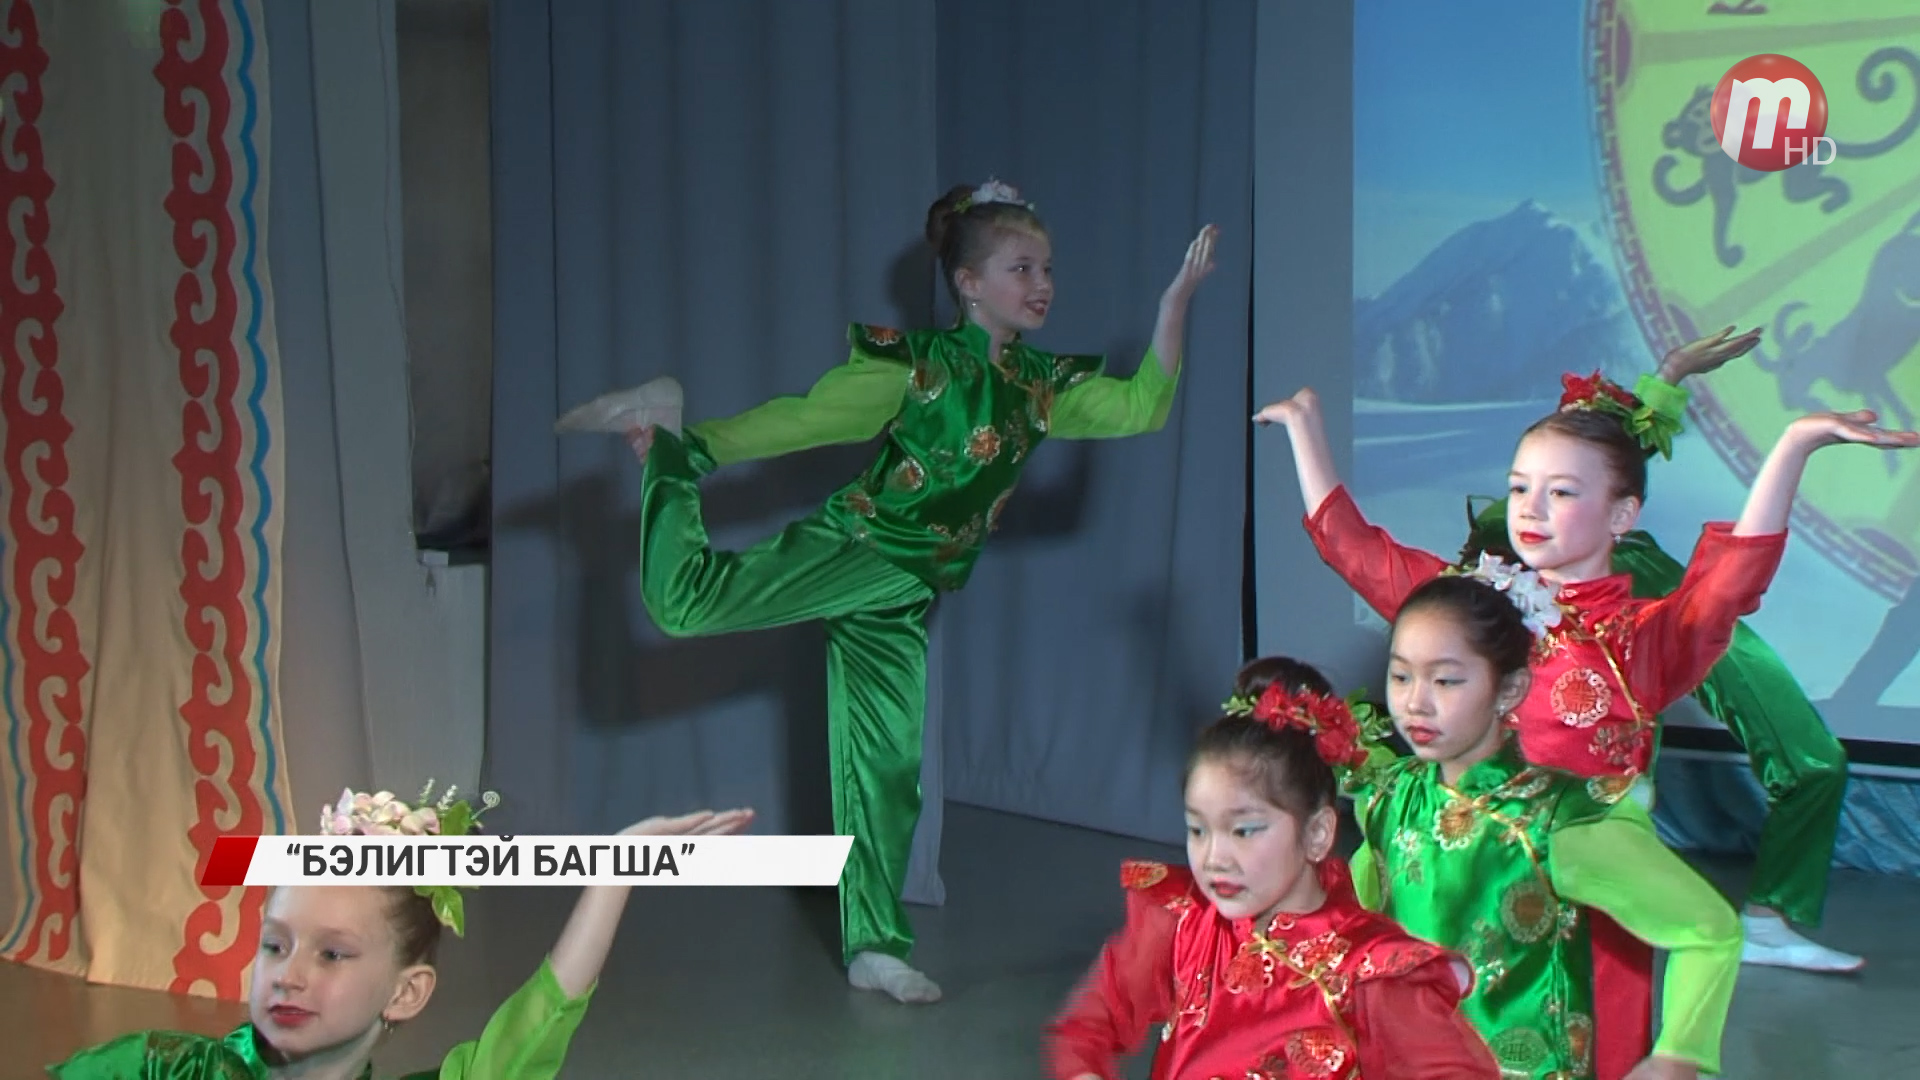 В Улан-Удэ продолжаются мероприятия посвященные Сагаалгану